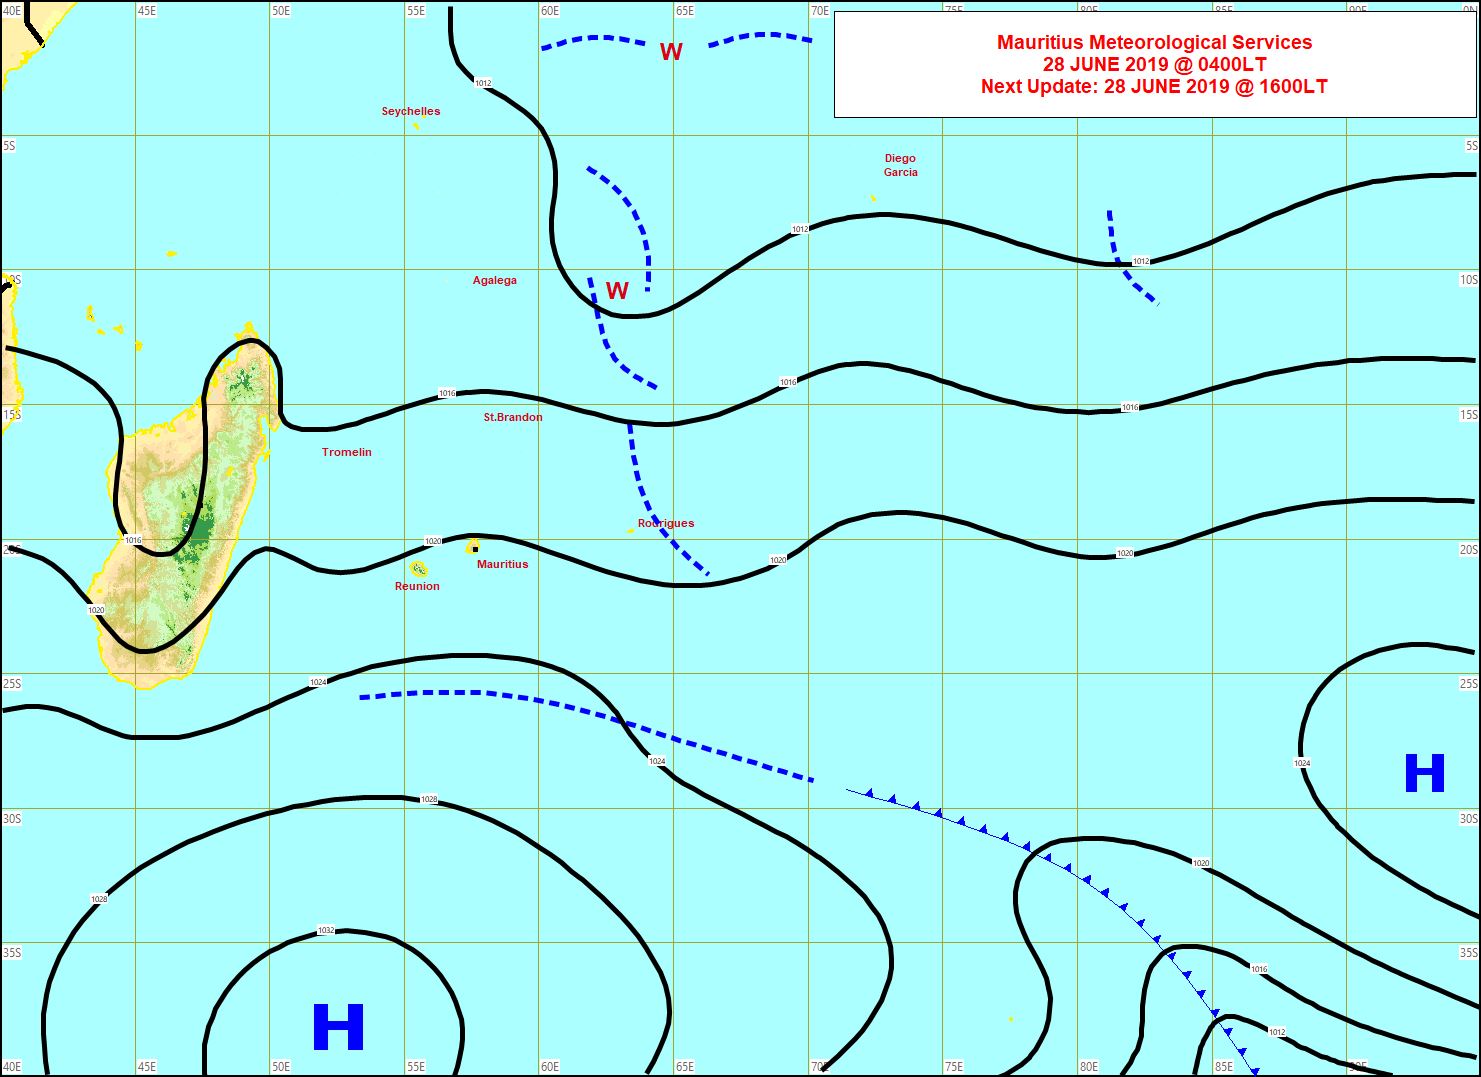 Analyse de la situation de surafce. L'anticyclone(1037hpa) au sud de nos îles a renforcé le vent. MMS